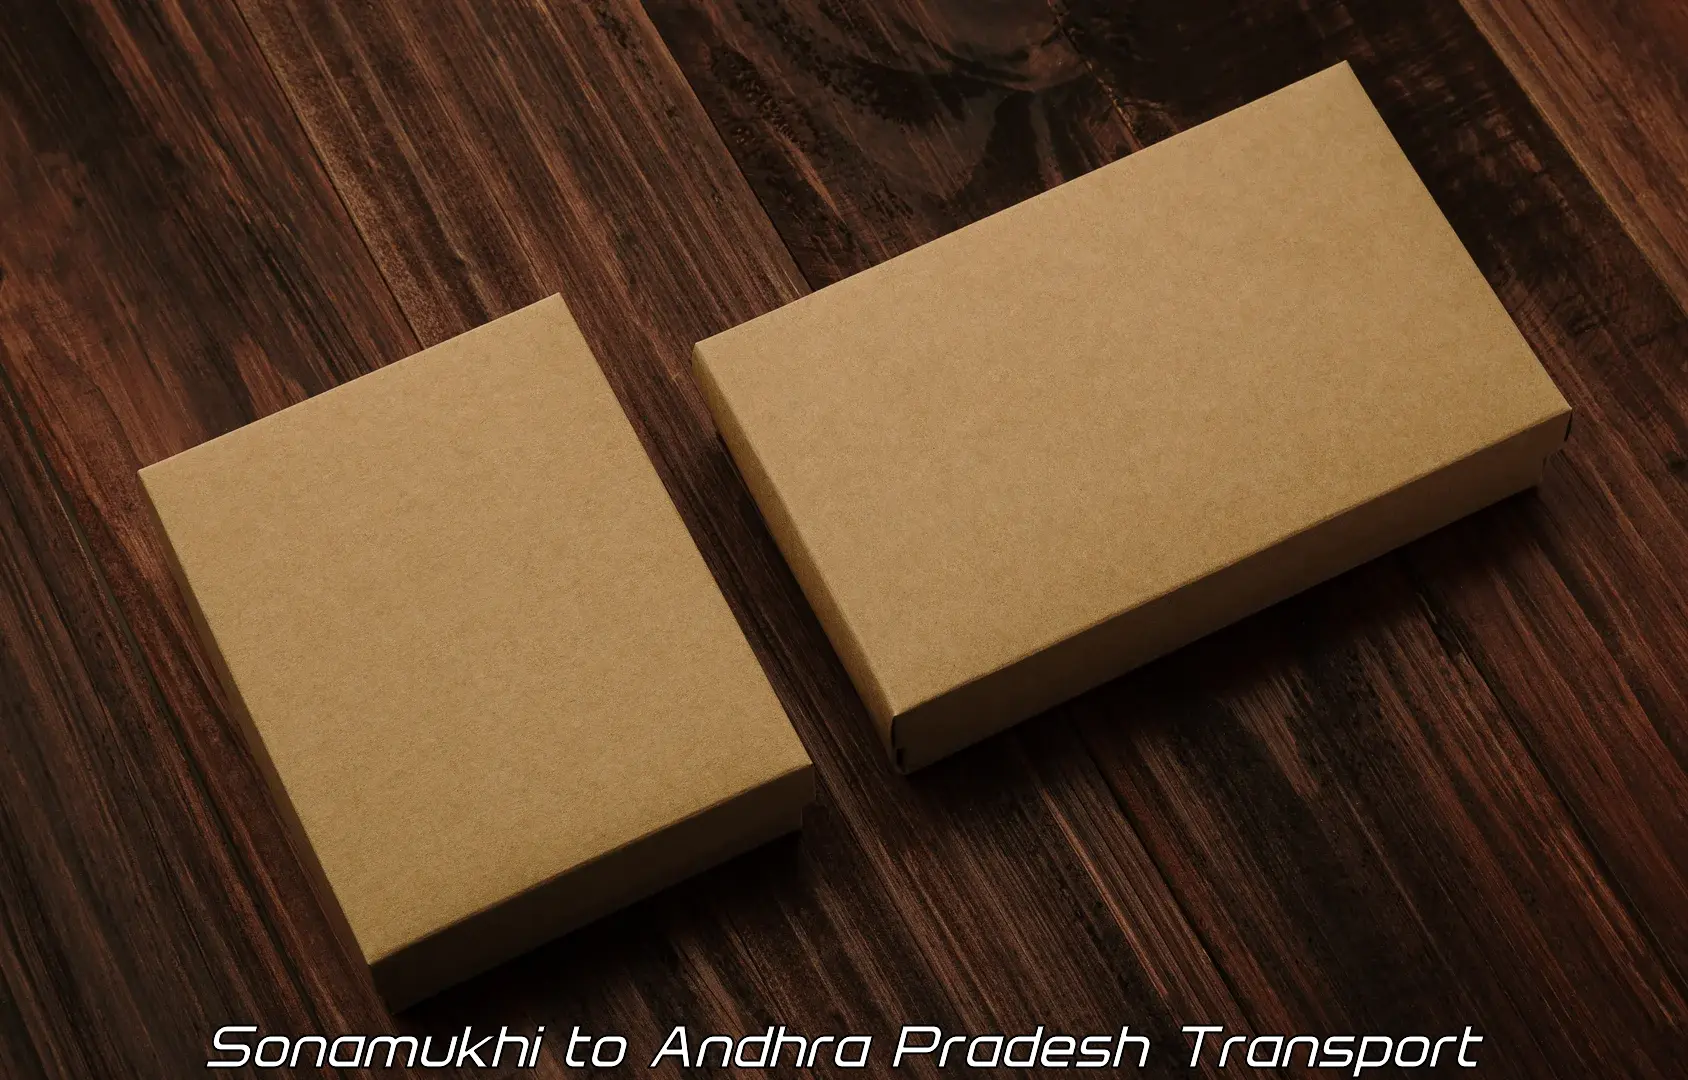 Vehicle parcel service Sonamukhi to Annavaram